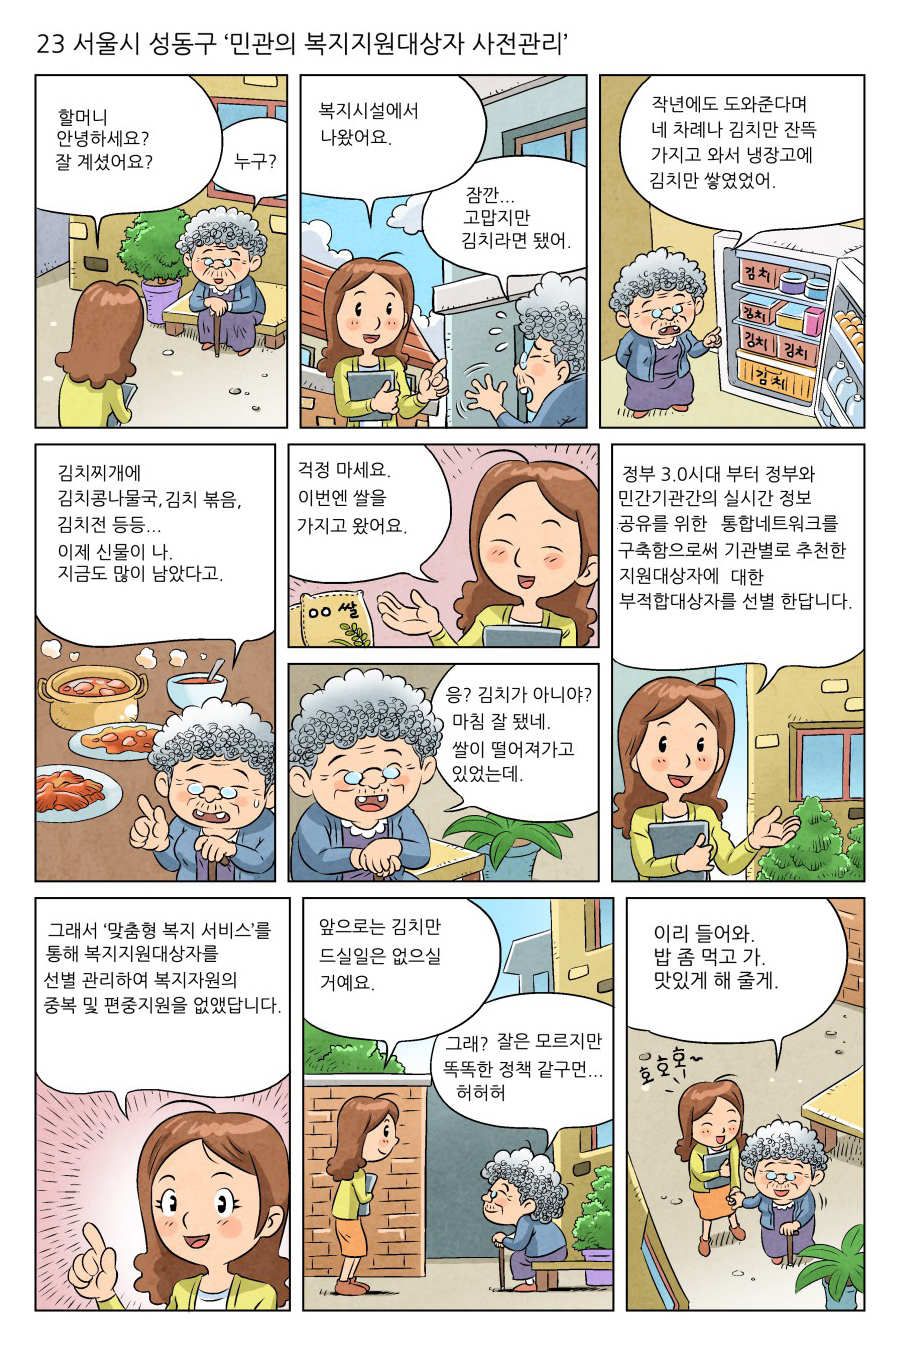 [정부3.0 우수사례] 23. 서울시 성동구 '민관의 복지지원대상자 사전관리'